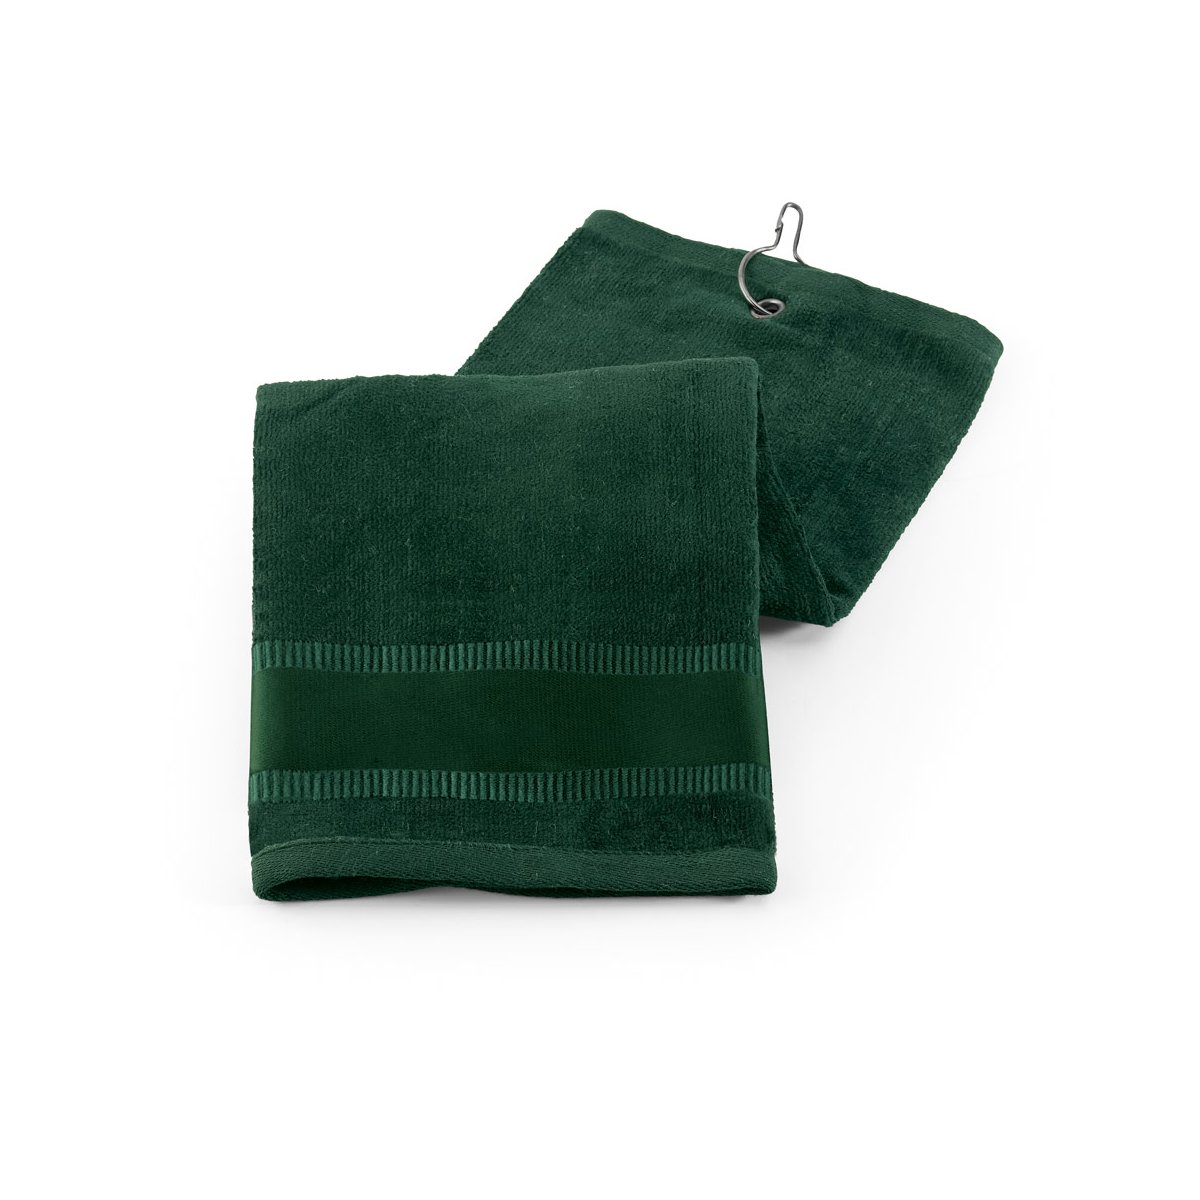 GOLFI. Wielofunkcyjny ręcznik - Ciemny zielony